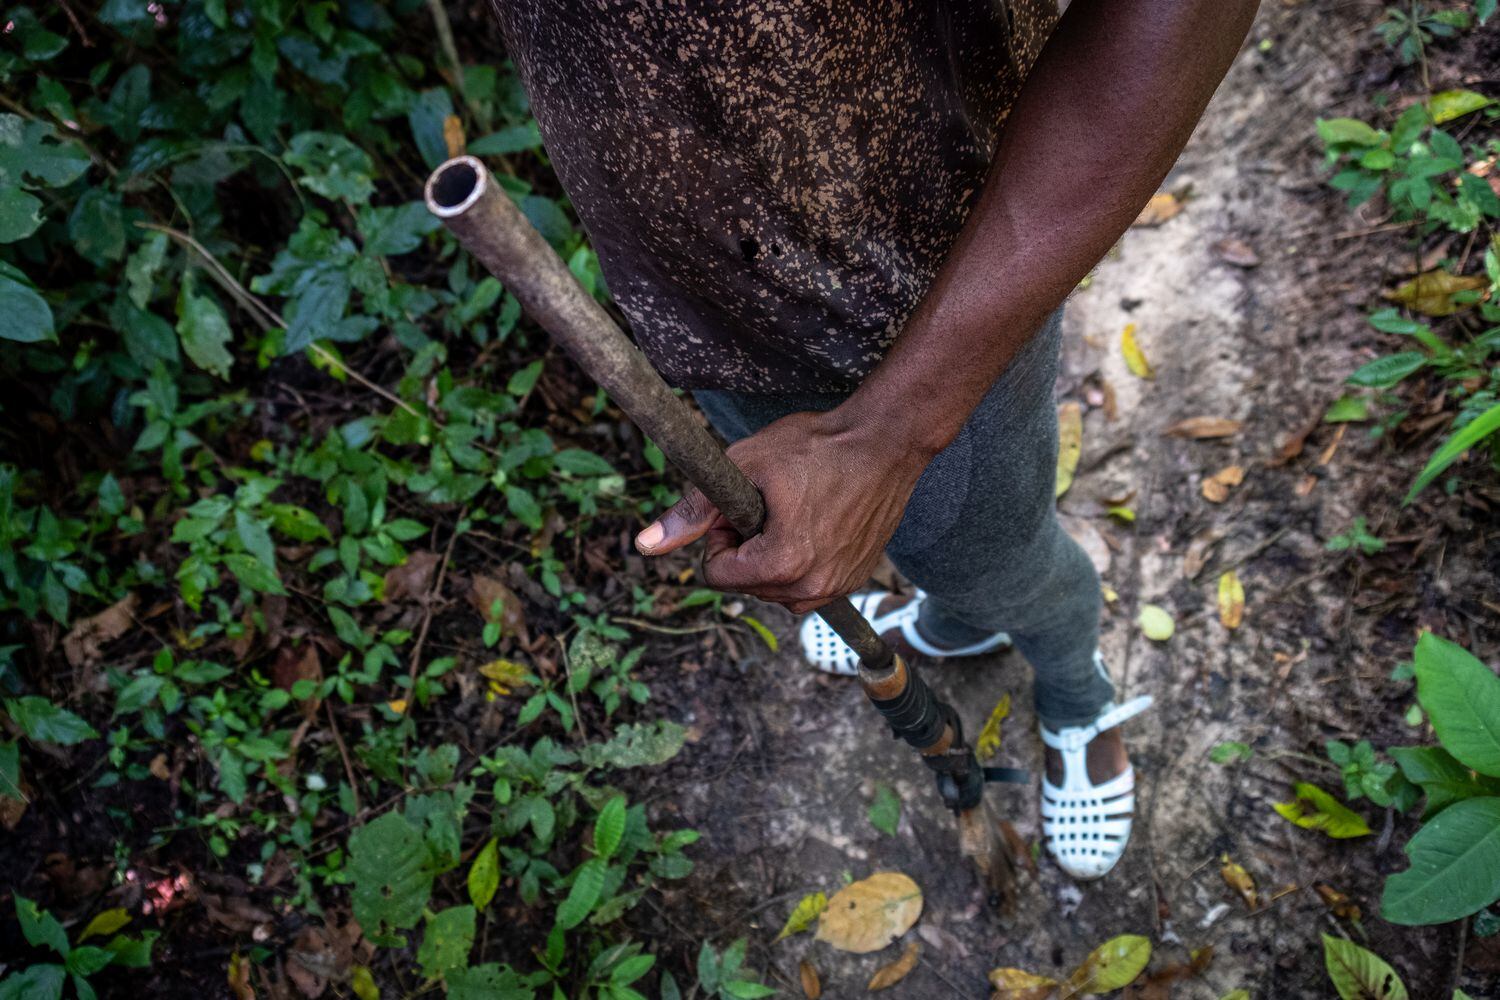 Ahmed Fofana busca caza salvaje en Costa de Marfil. Su arma perteneció a su abuelo y está reforzada con cinta adhesiva. Pincha en la imagen para ver la fotogalería completa